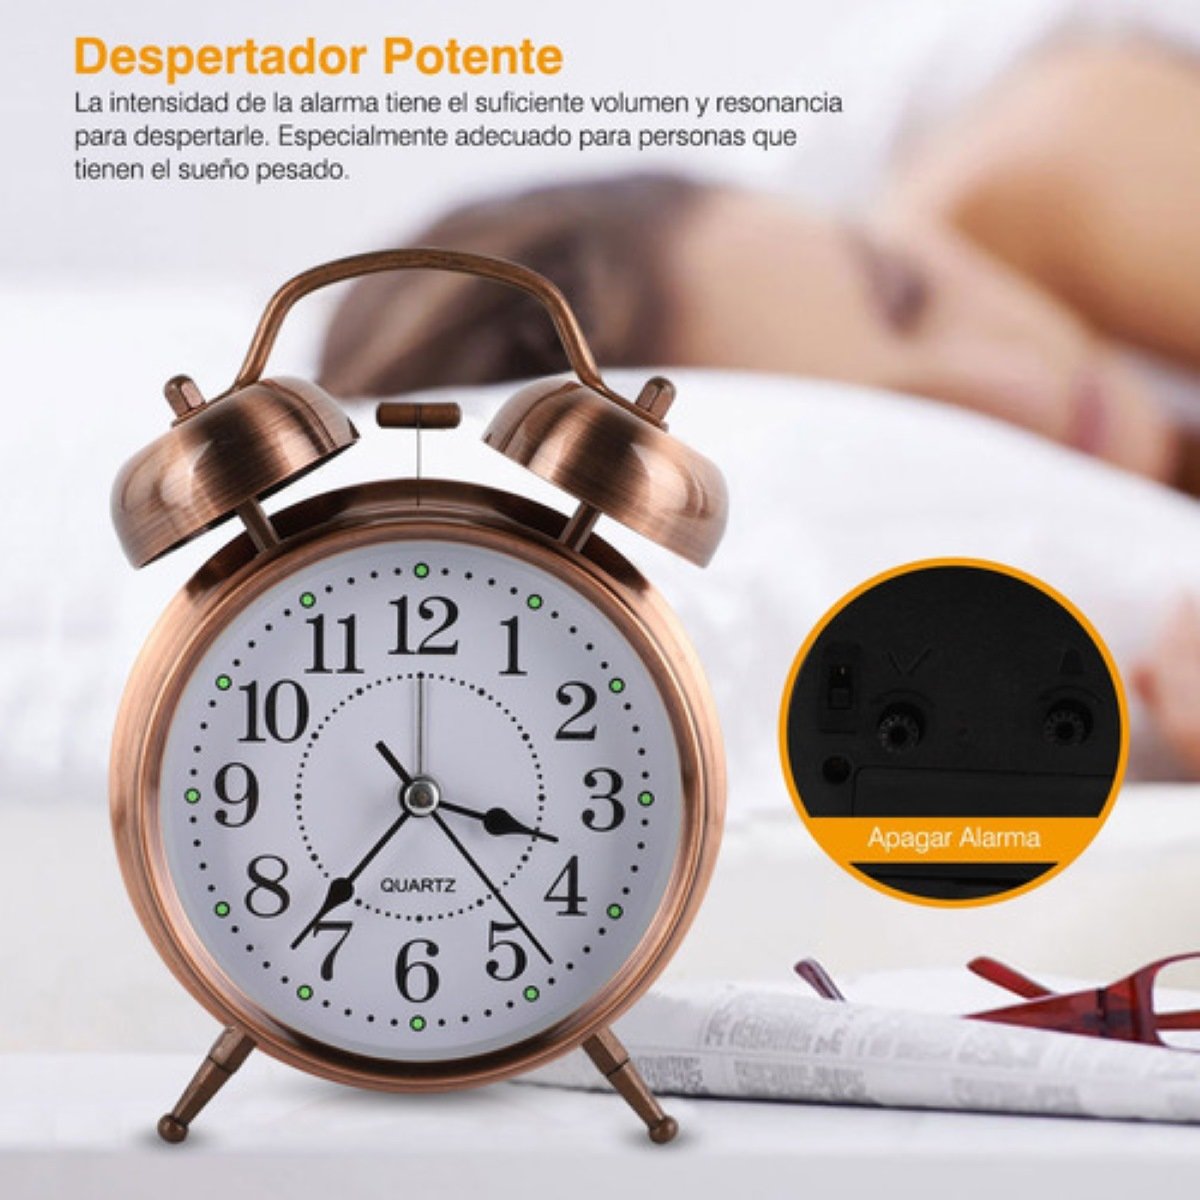 SAMI S-9944L Reloj Despertador Analogico Silencioso - Guanxe Atlantic  Marketplace